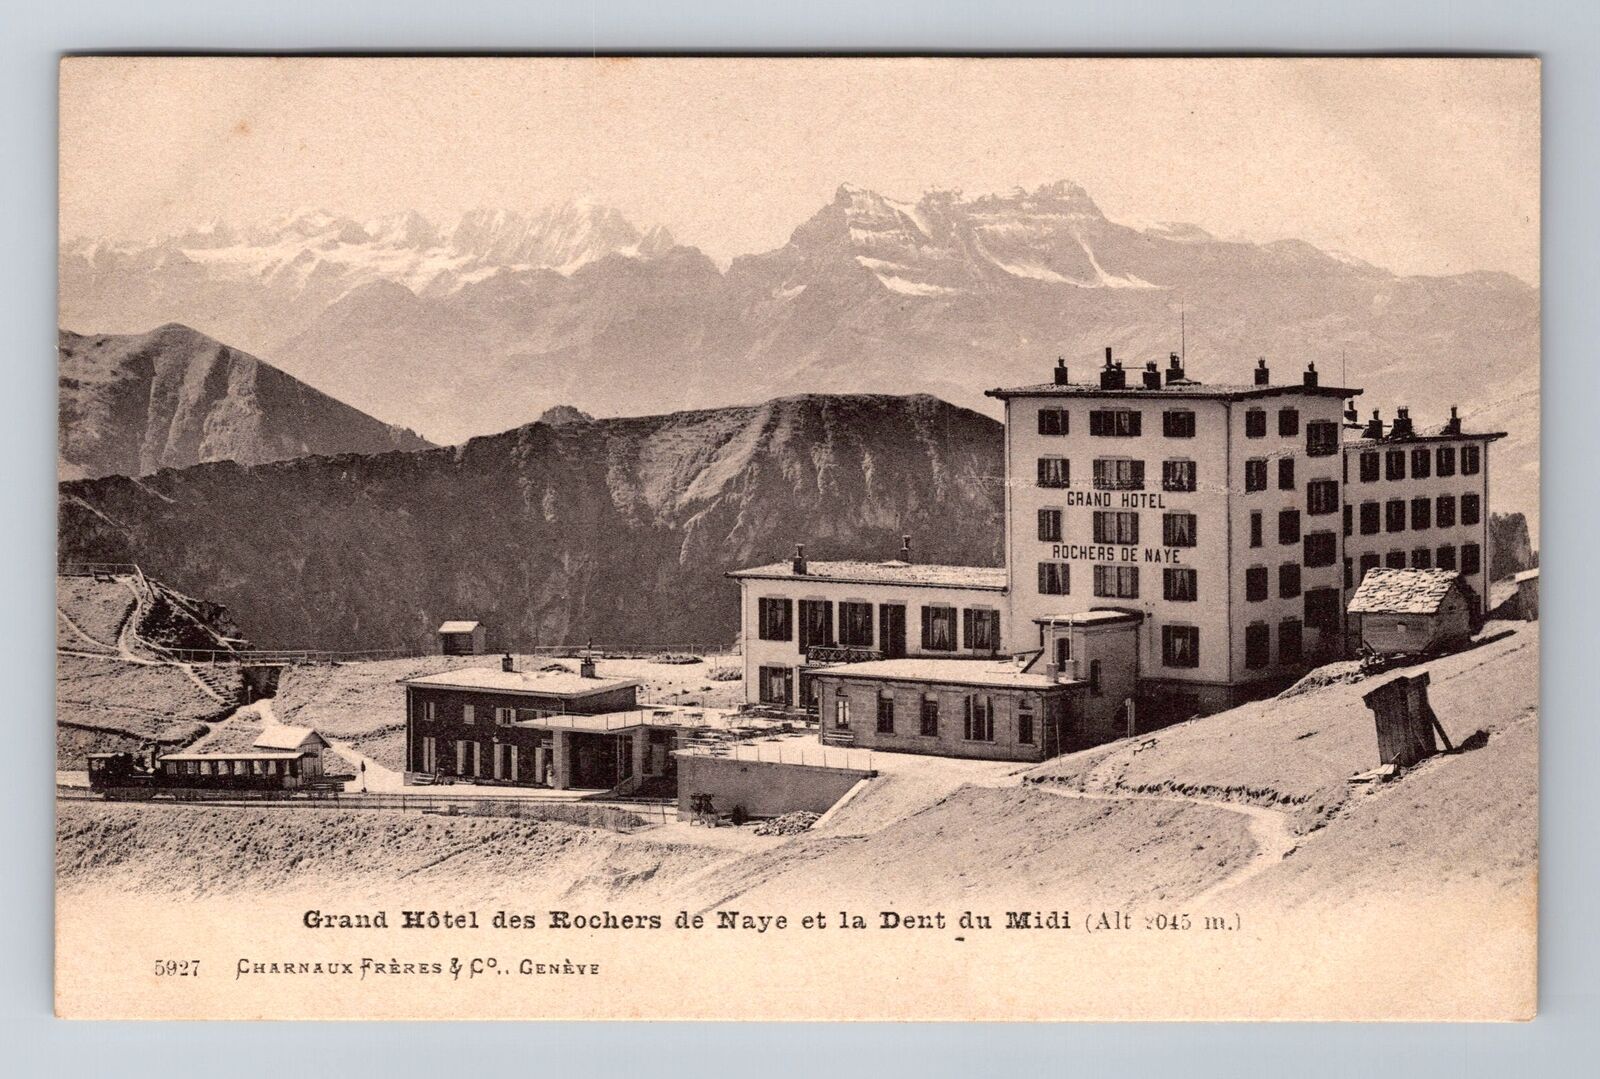 Switzerland, Grand Hotel des Rochers de Naye et la Dent du Midi Vintage Postcard